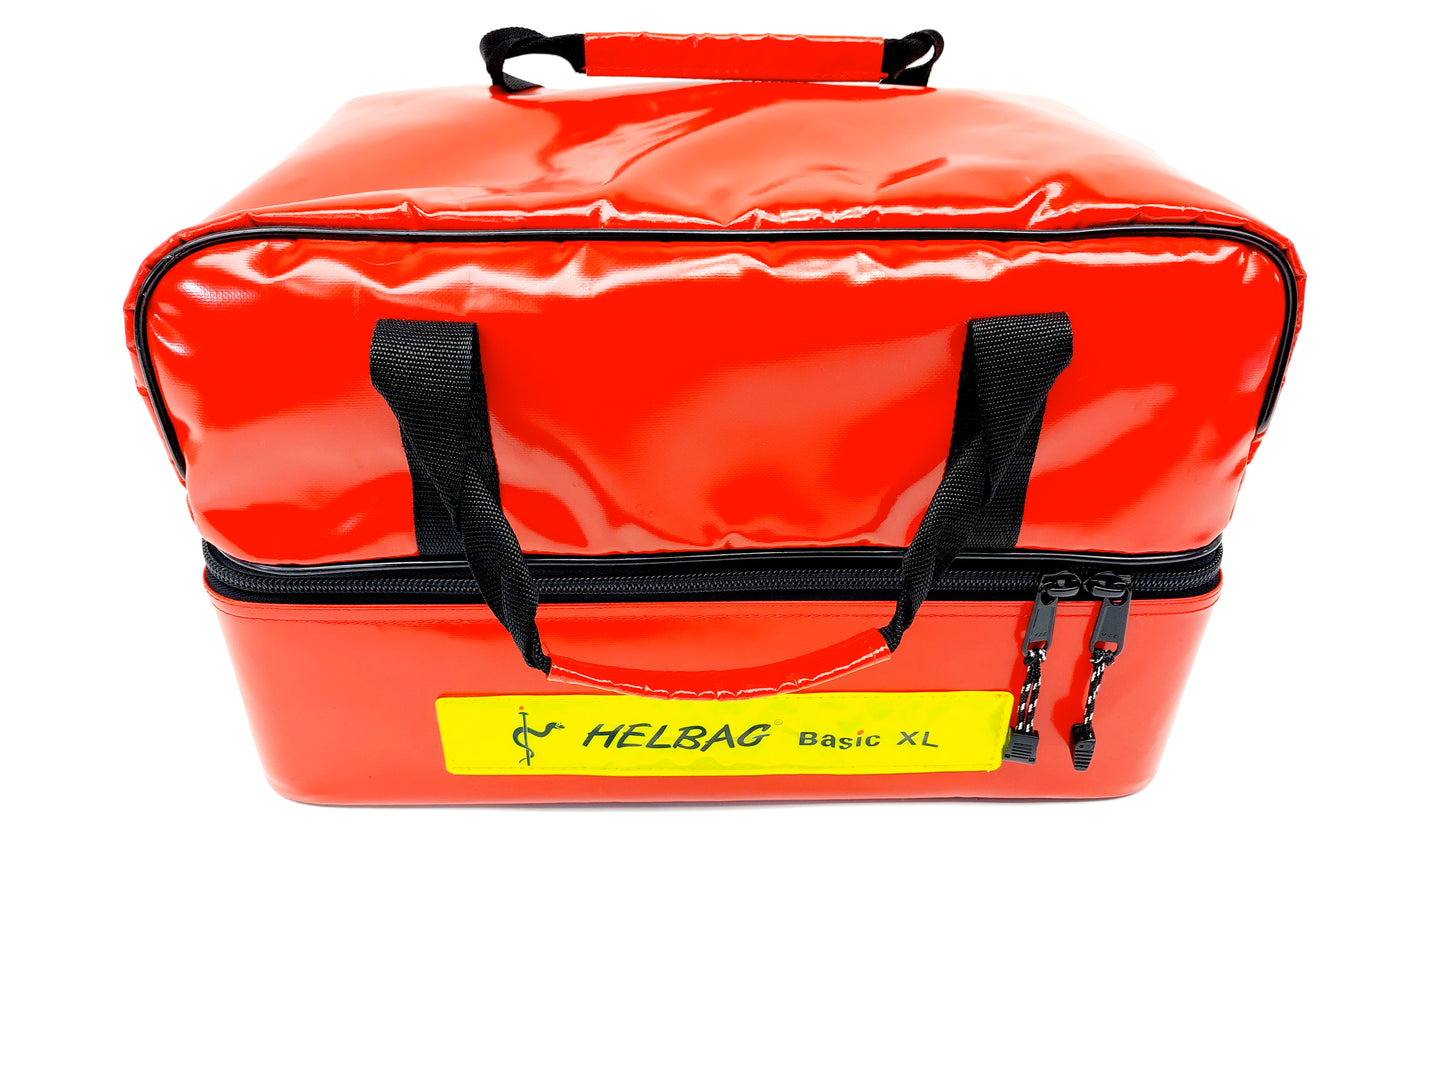 Feuerwehrsanitätstasche
in HELBAG Basic XL Notfallkoffer mit viel Zubehör Erste Hilfe Koffer